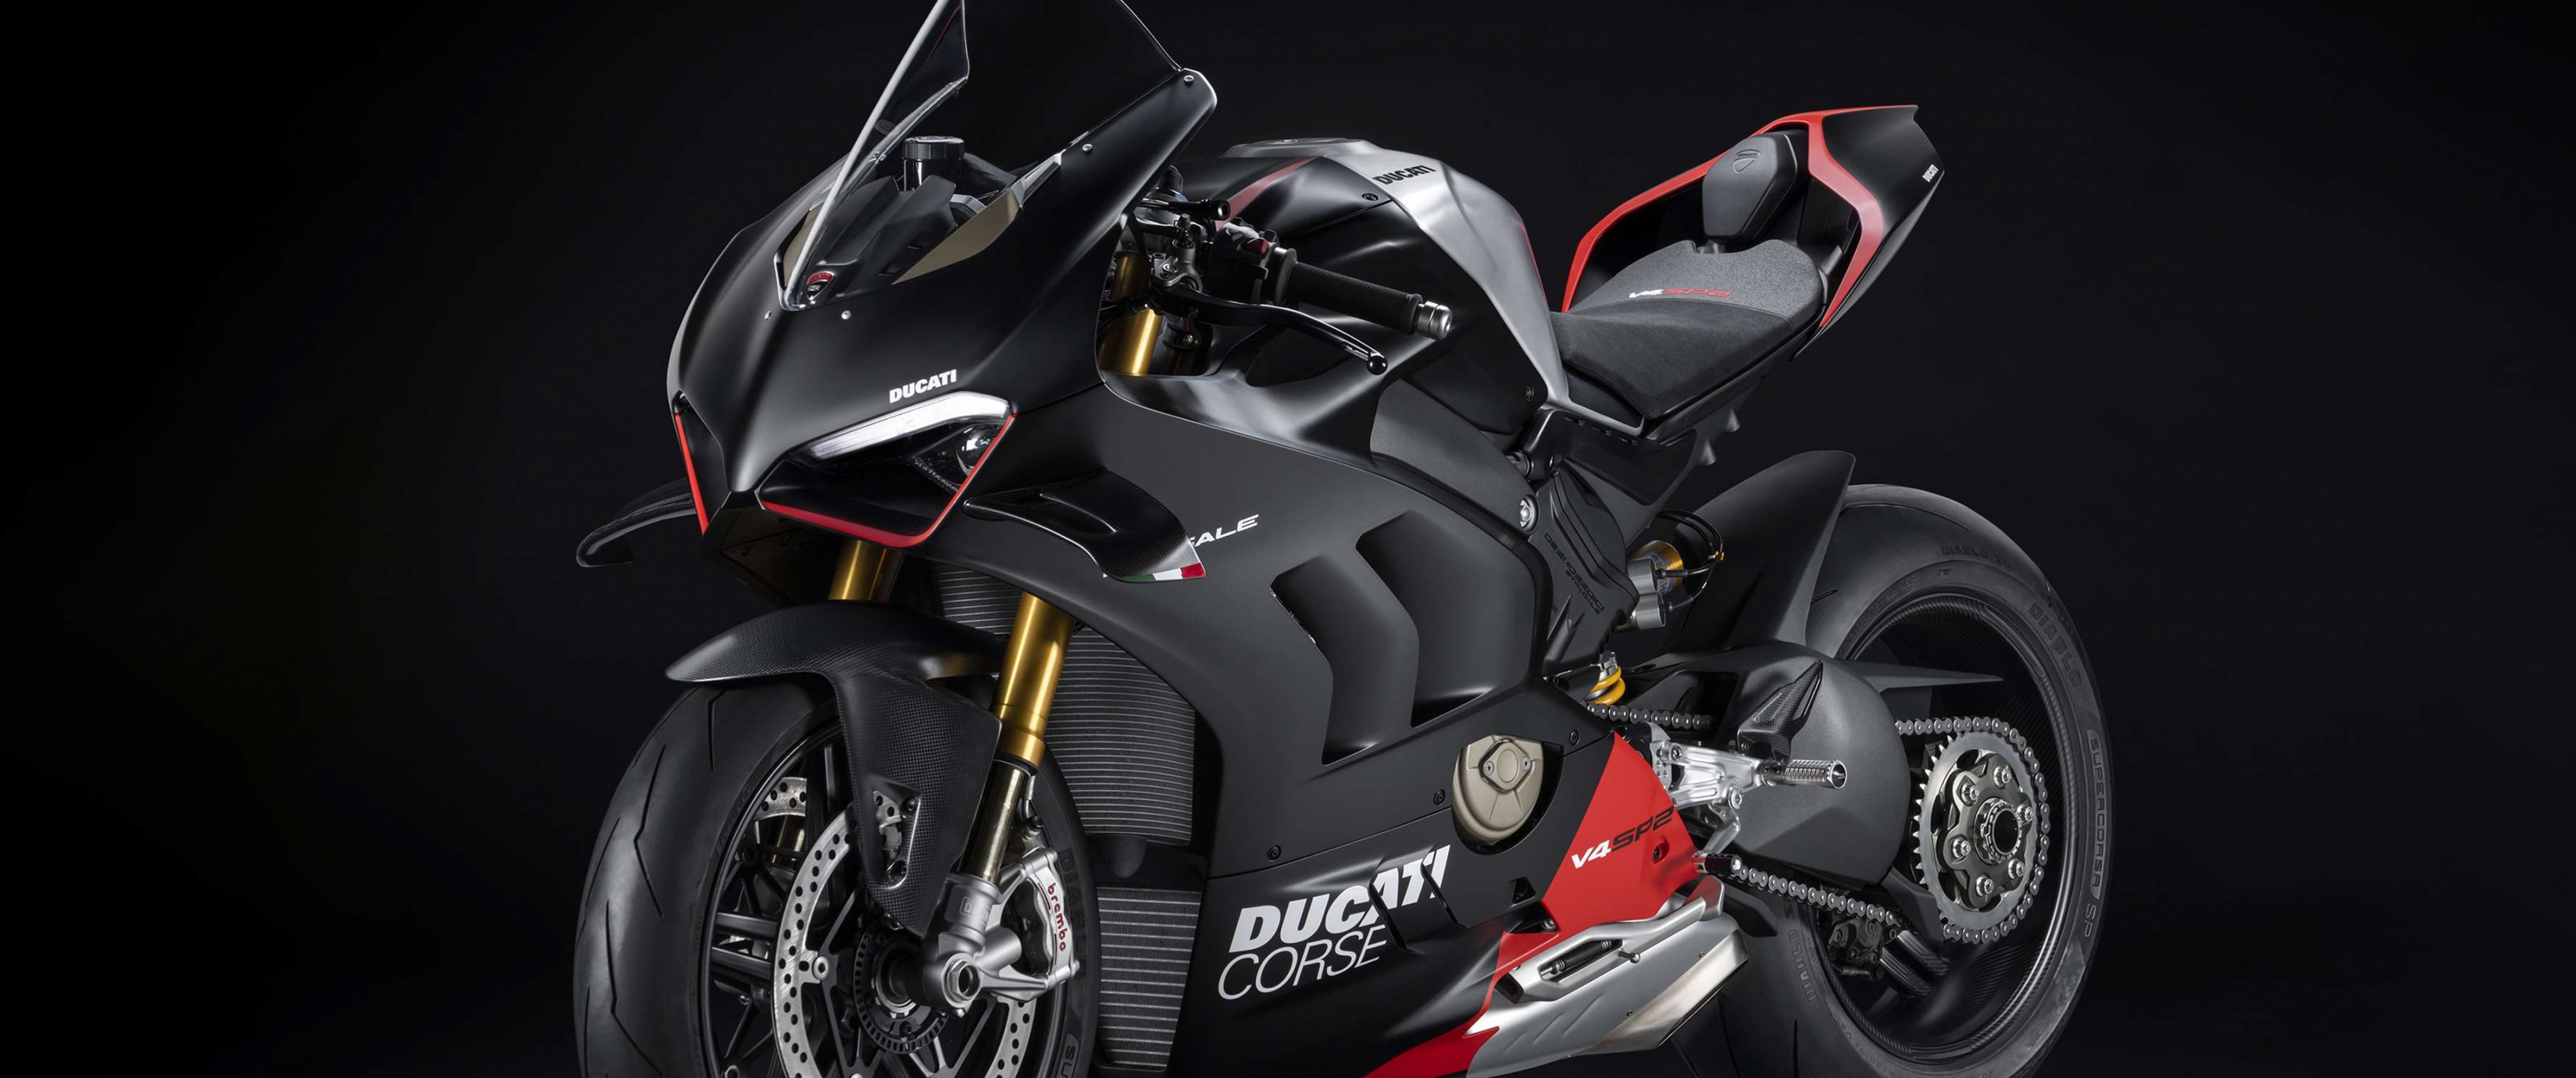 Hình nền Ducati Panigale V4 SP2 4K, nền đen, màu đen là lựa chọn hoàn hảo cho những người yêu thích xe moto. Với sắc đen tuyệt đẹp, hình nền này giúp cho chiếc máy của bạn trông thật đẳng cấp và mạnh mẽ. Hải phóng trên con đường cùng chiếc xe của mình và đừng quên lưu giữ hình nền đẹp này.